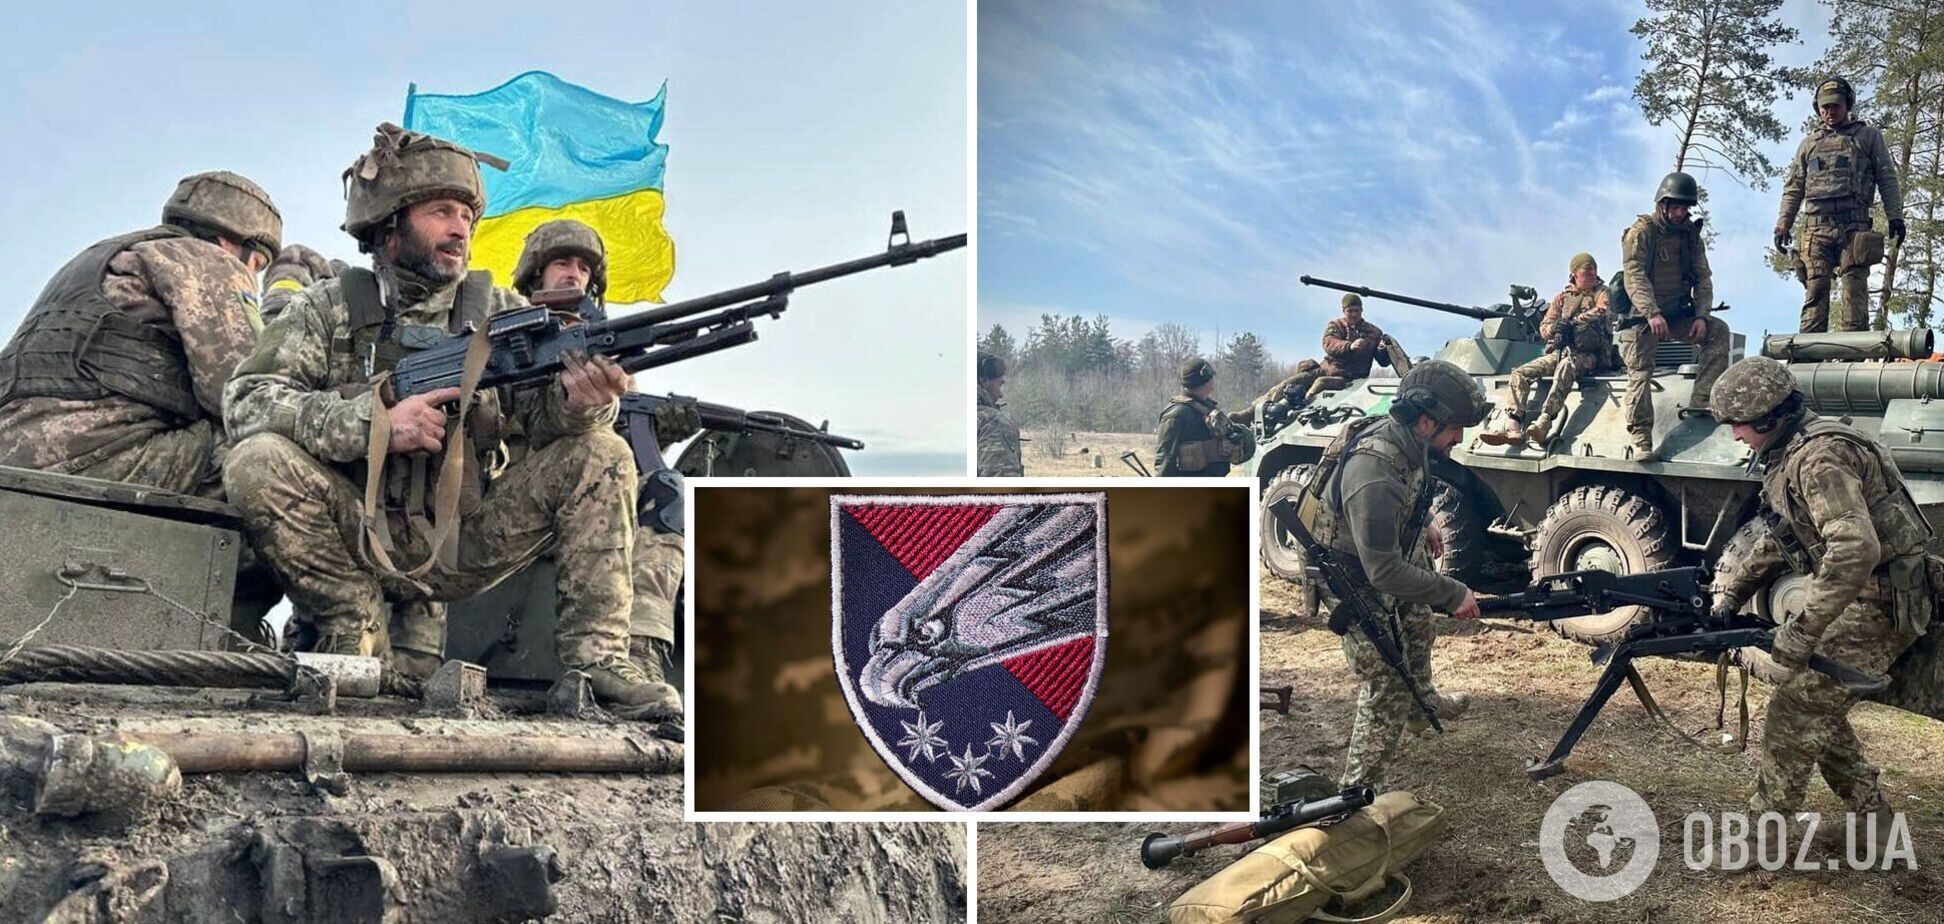 'Настоящая украинская сила': Зеленский показал героев, защищающих Украину еще с 2014 года